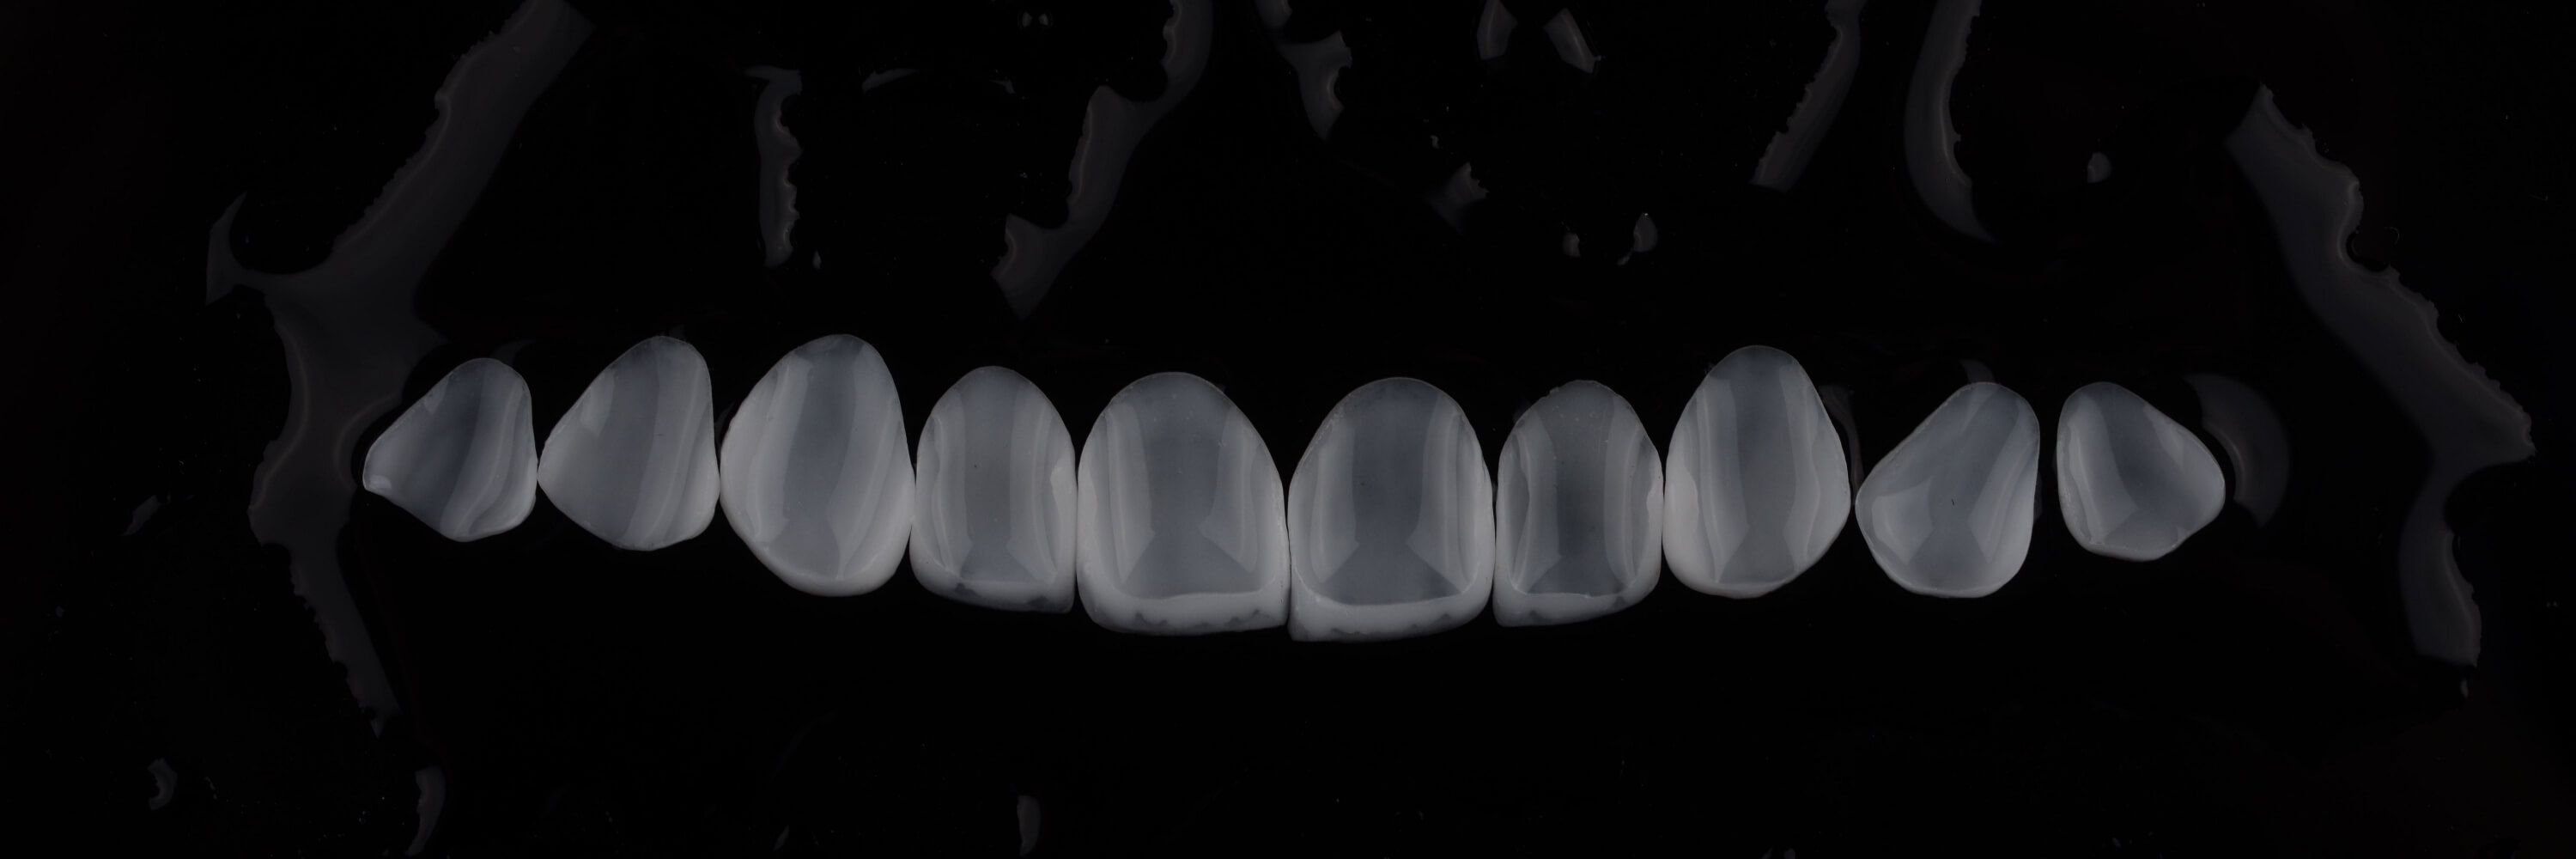 керамические виниры перед установкой на зубы